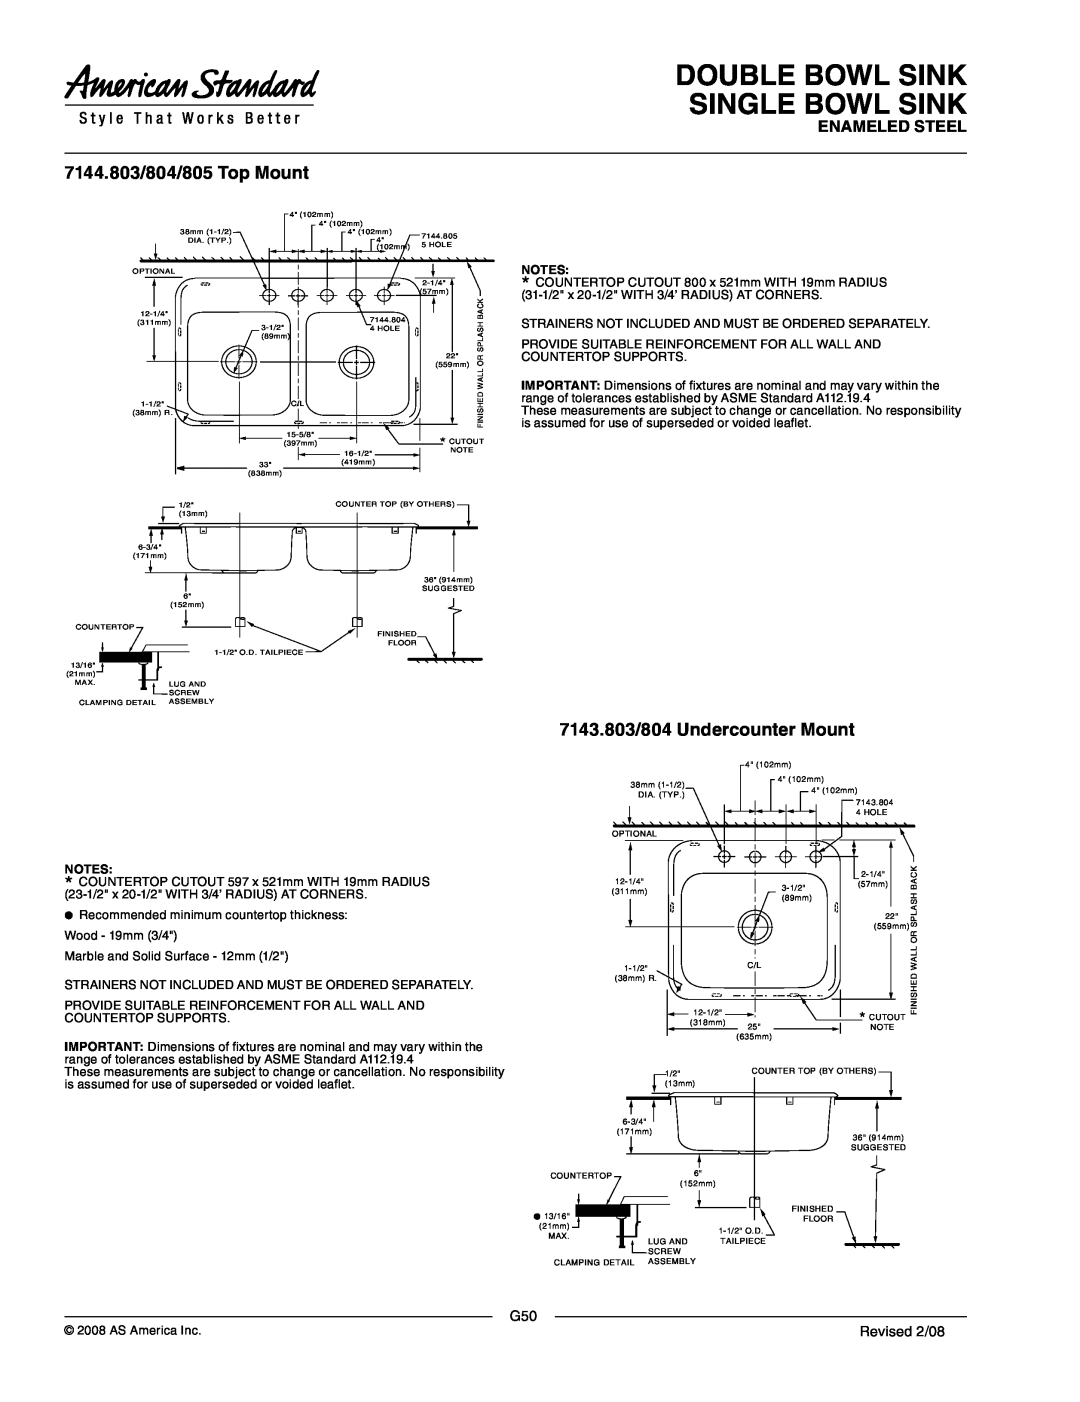 American Standard 7144.804, 7144.803 dimensions Double Bowl Sink Single Bowl Sink, Enameled Steel, Revised 2/08 